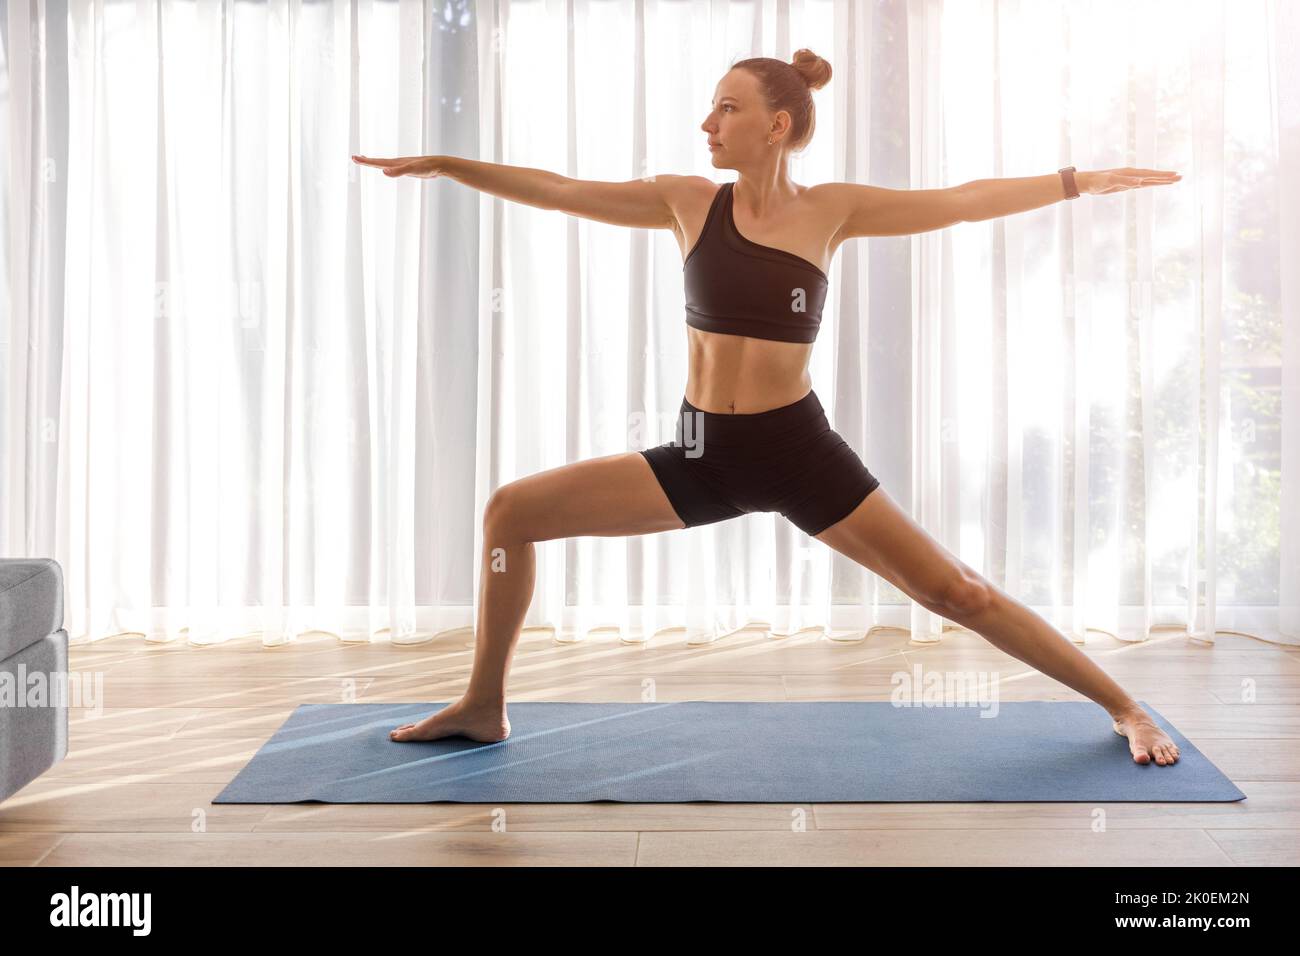 Junge Dame in schwarzer Sportkleidung, die im Zimmer mit großem Fenster Yoga macht Stockfoto